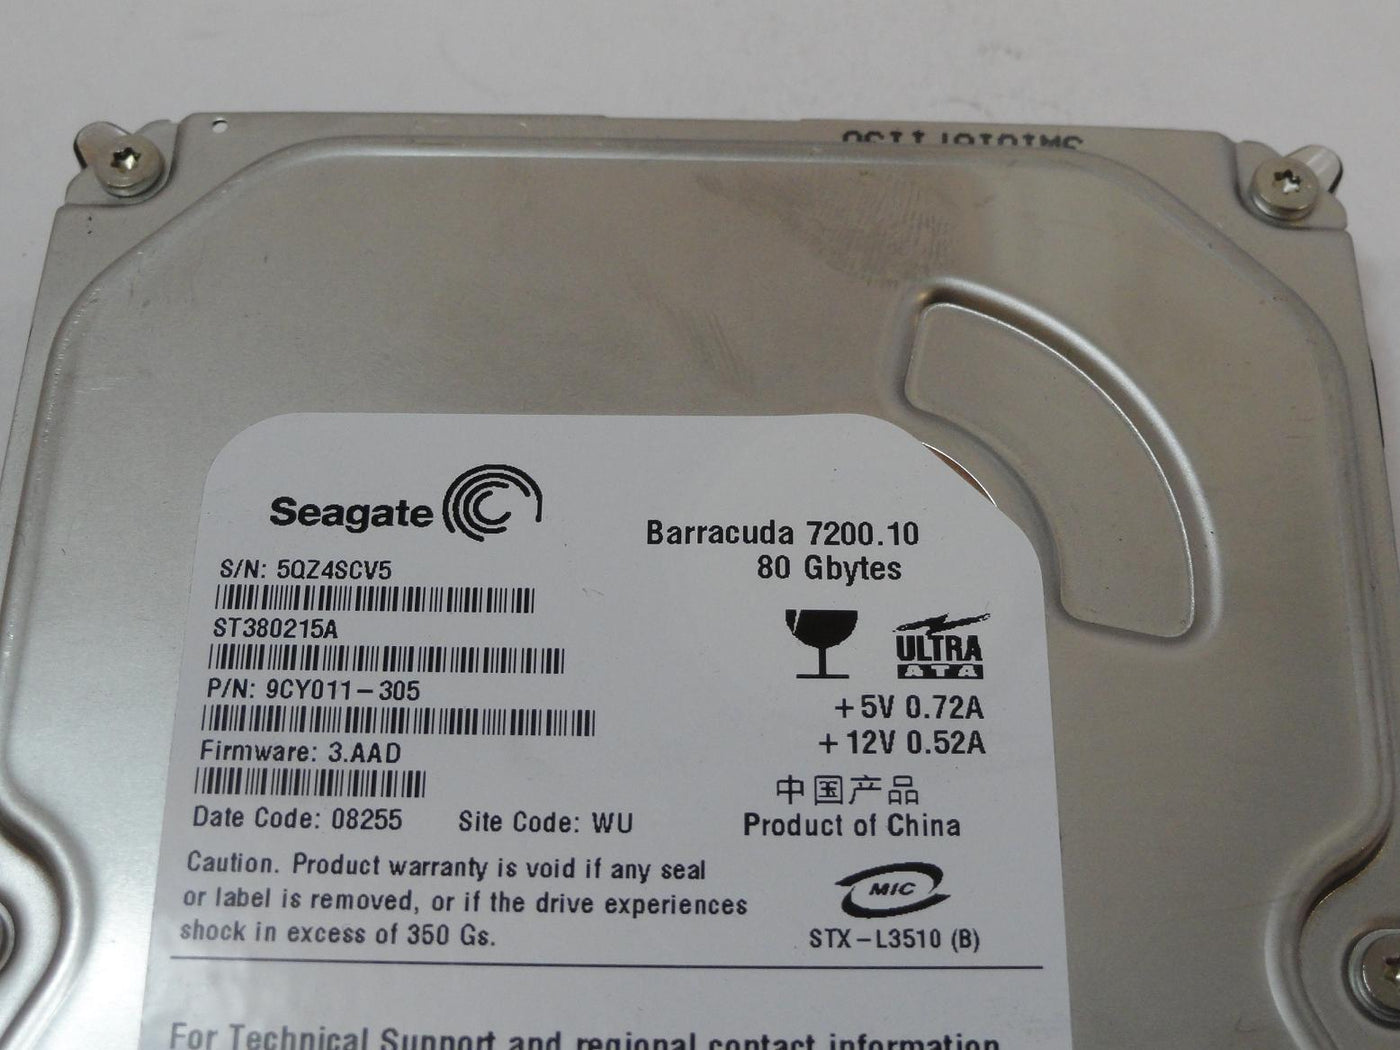 PR04633_9CY011-305_Seagate 80GB IDE 7200rpm 3.5in HDD - Image3